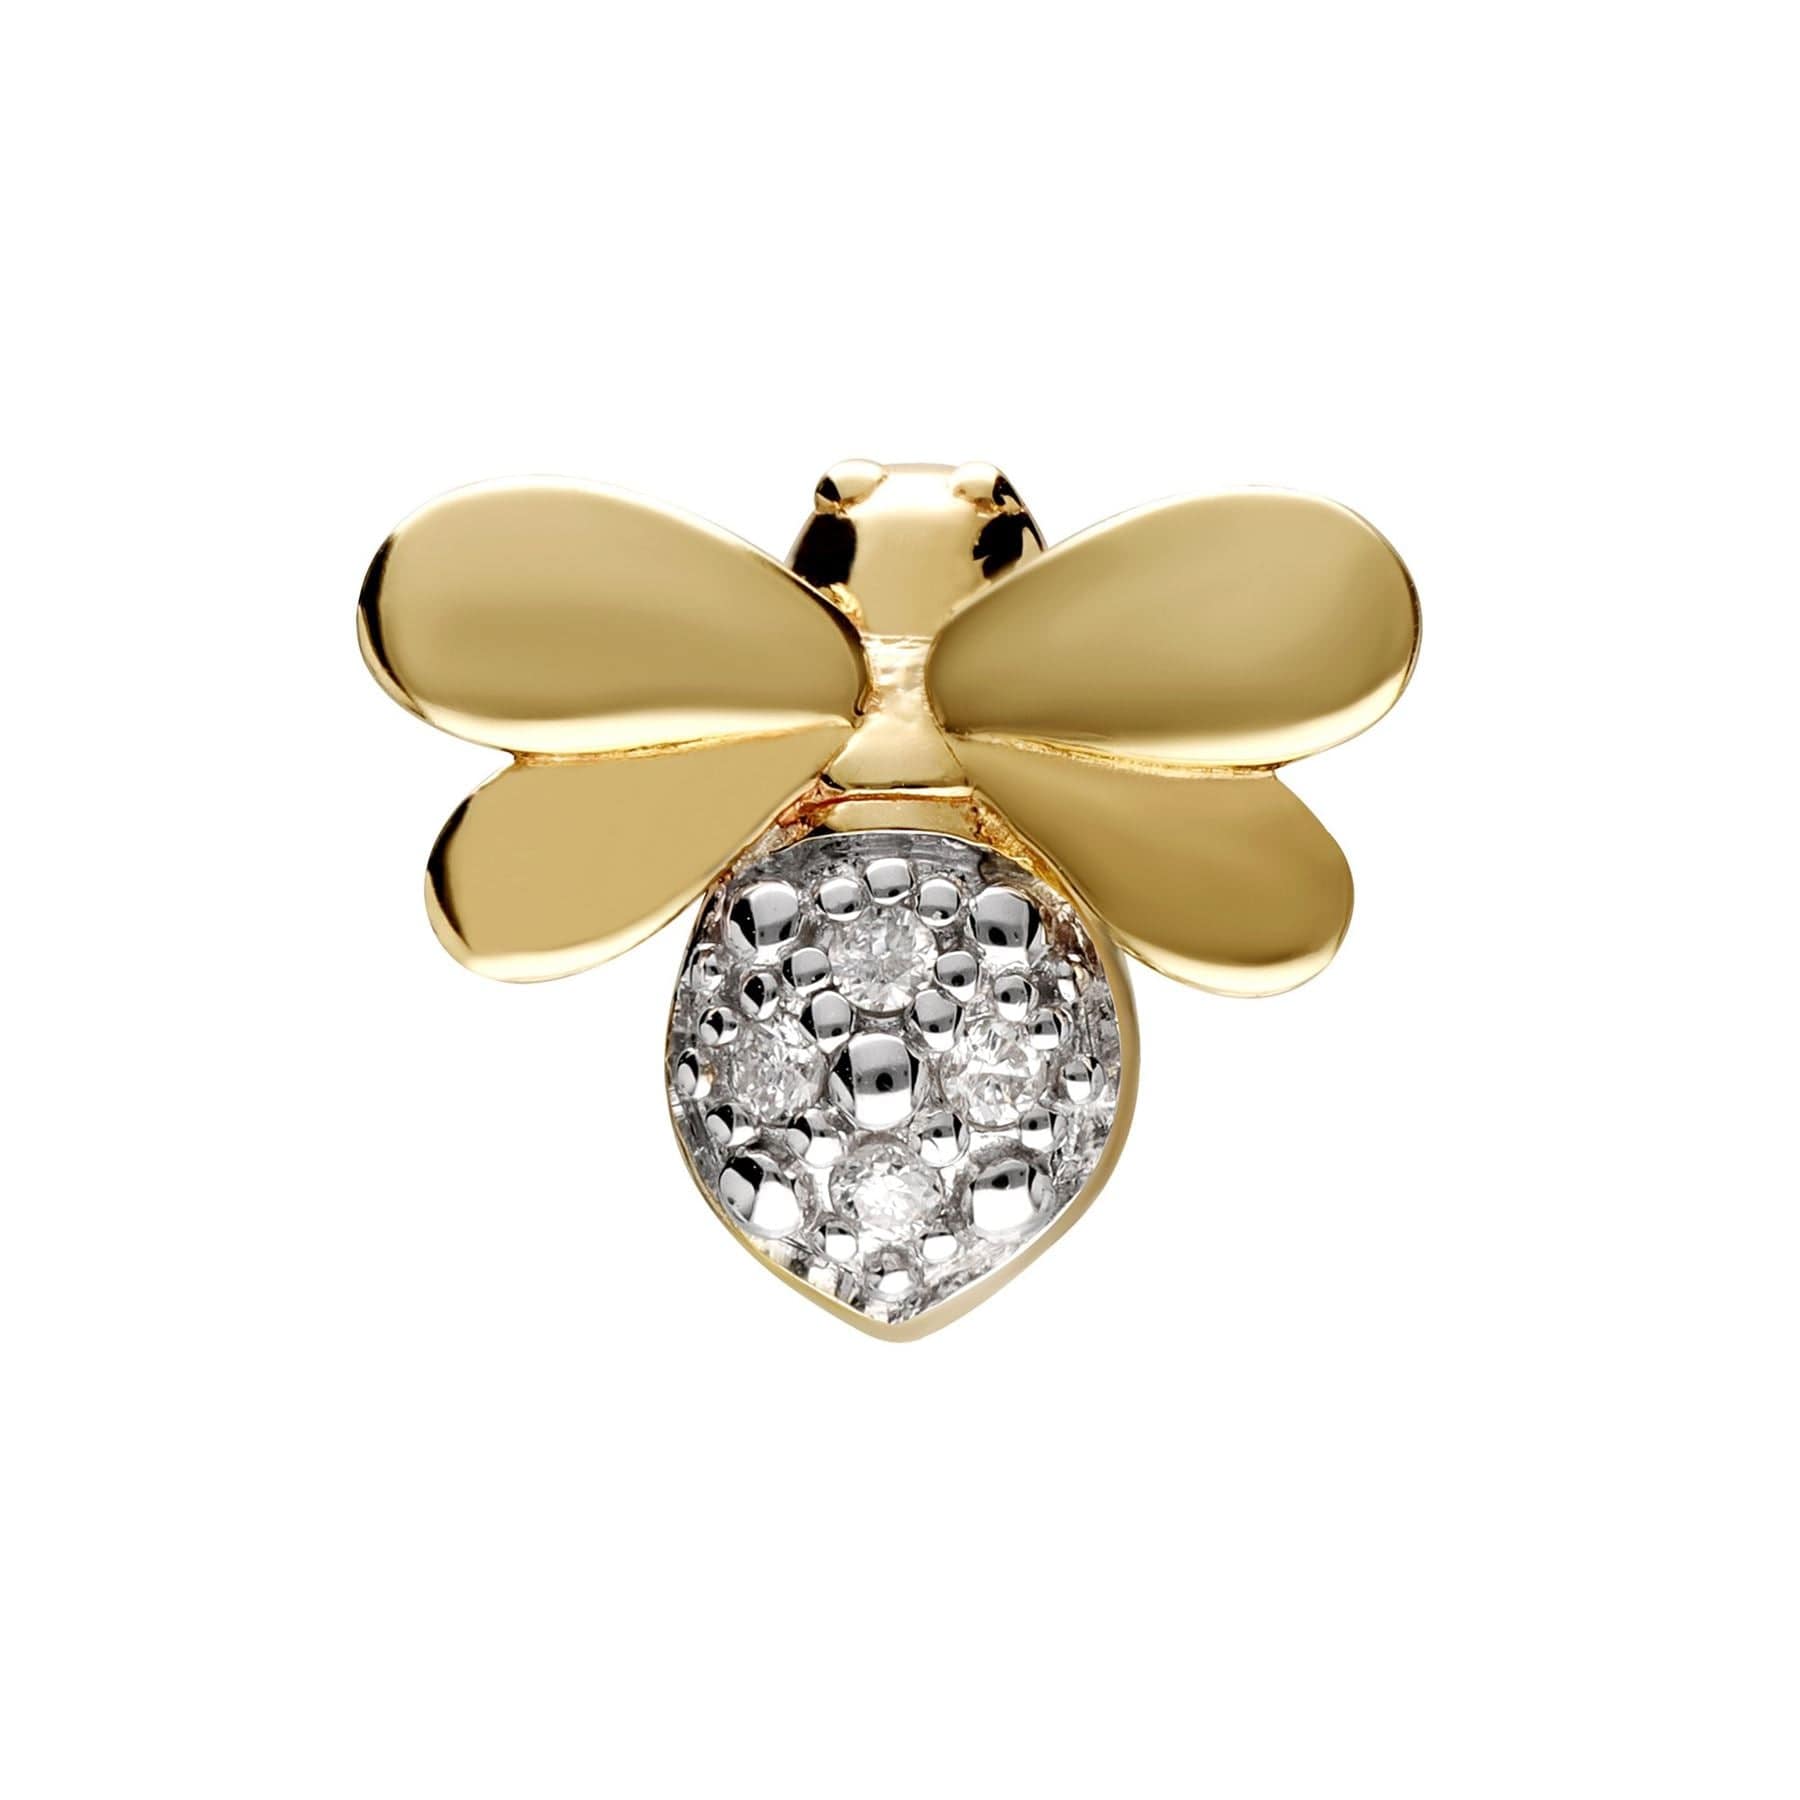 Honeycomb Inspired Diamond Bee Pin In 9ct Yellow Gold - Gemondo